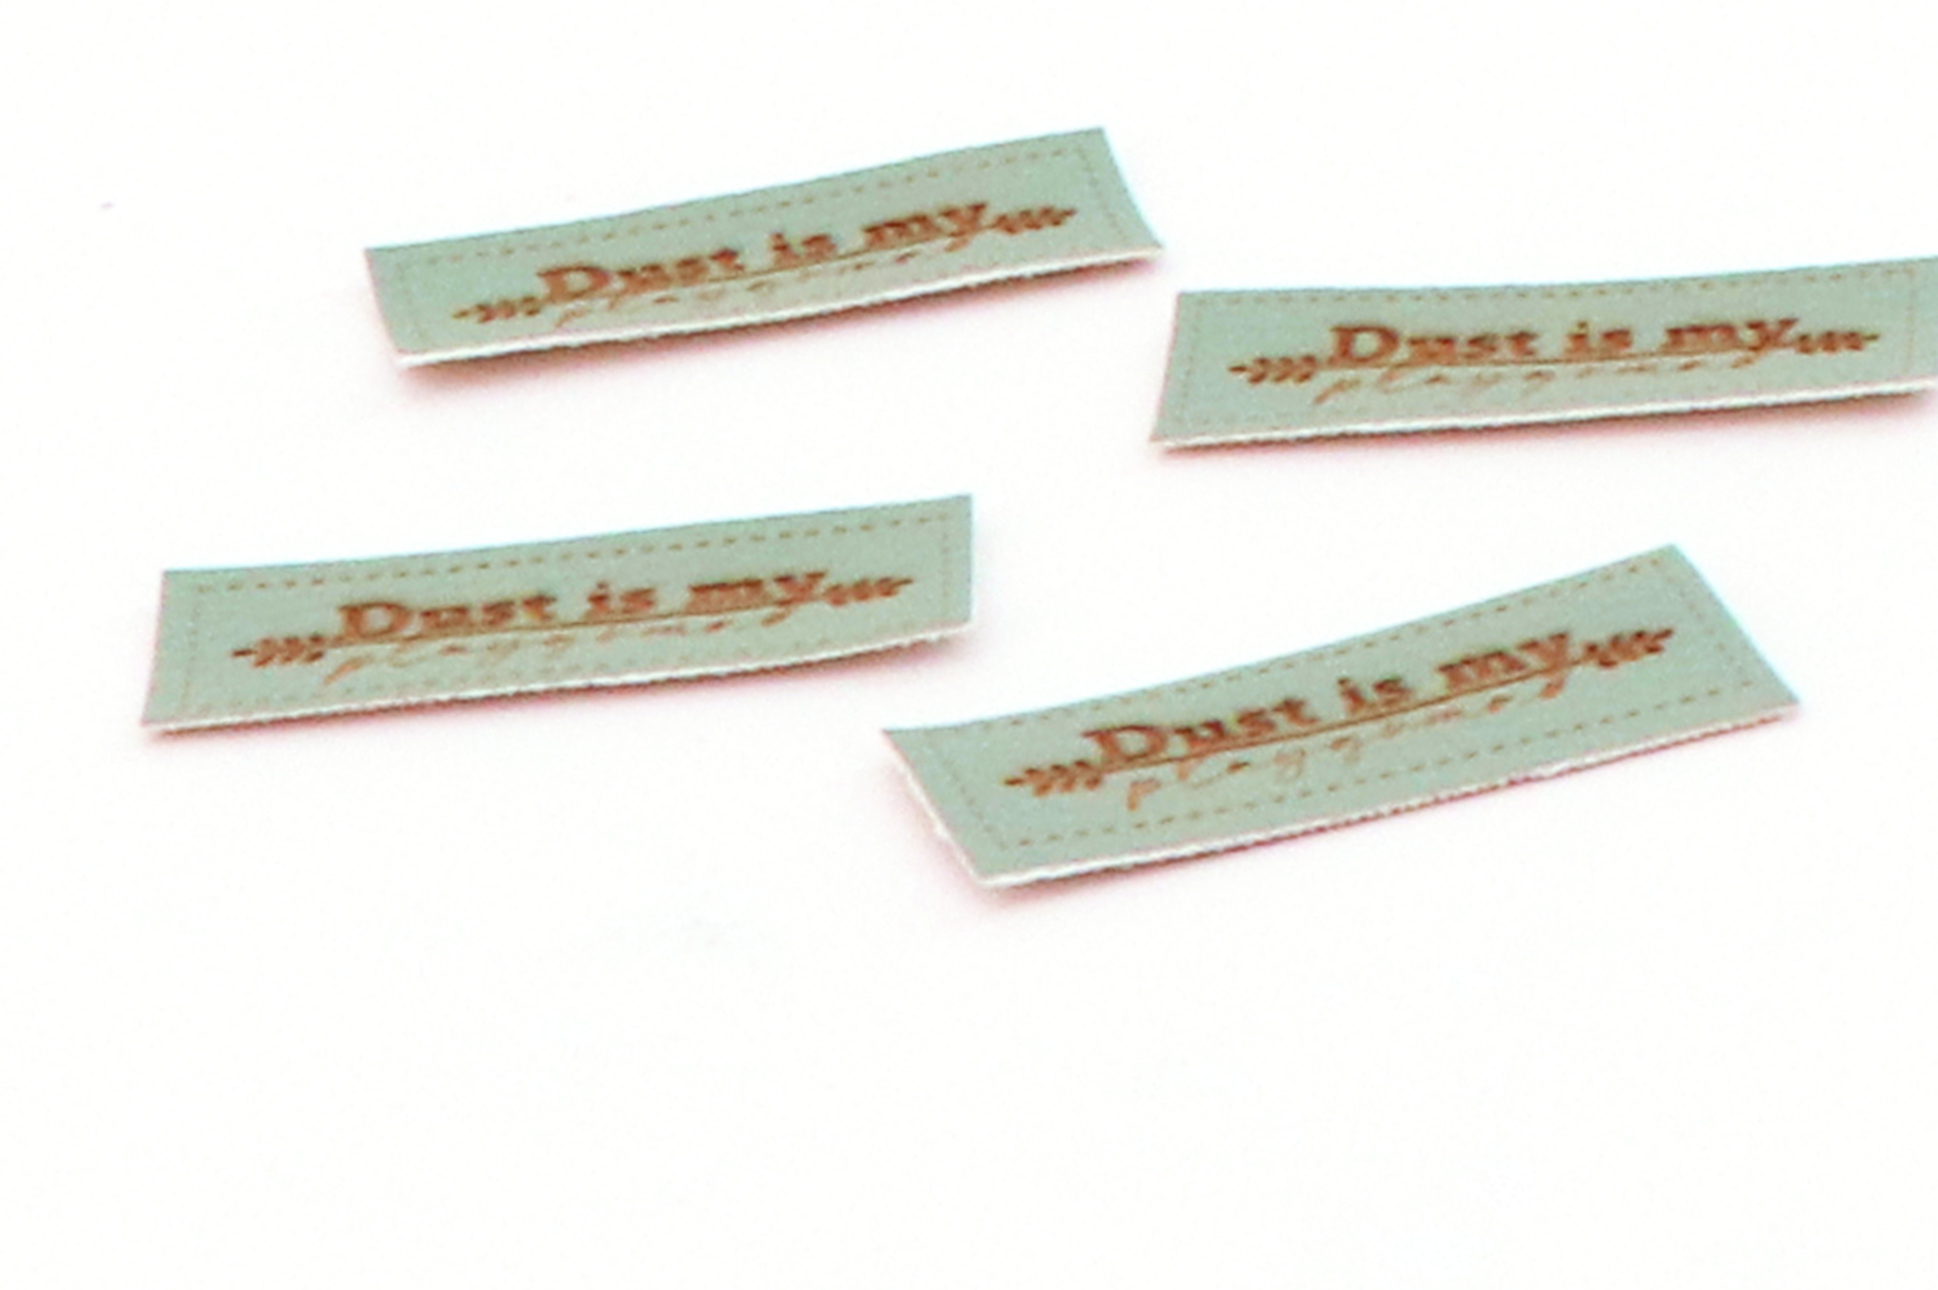 Etichetta "Dust is my playground", verde menta